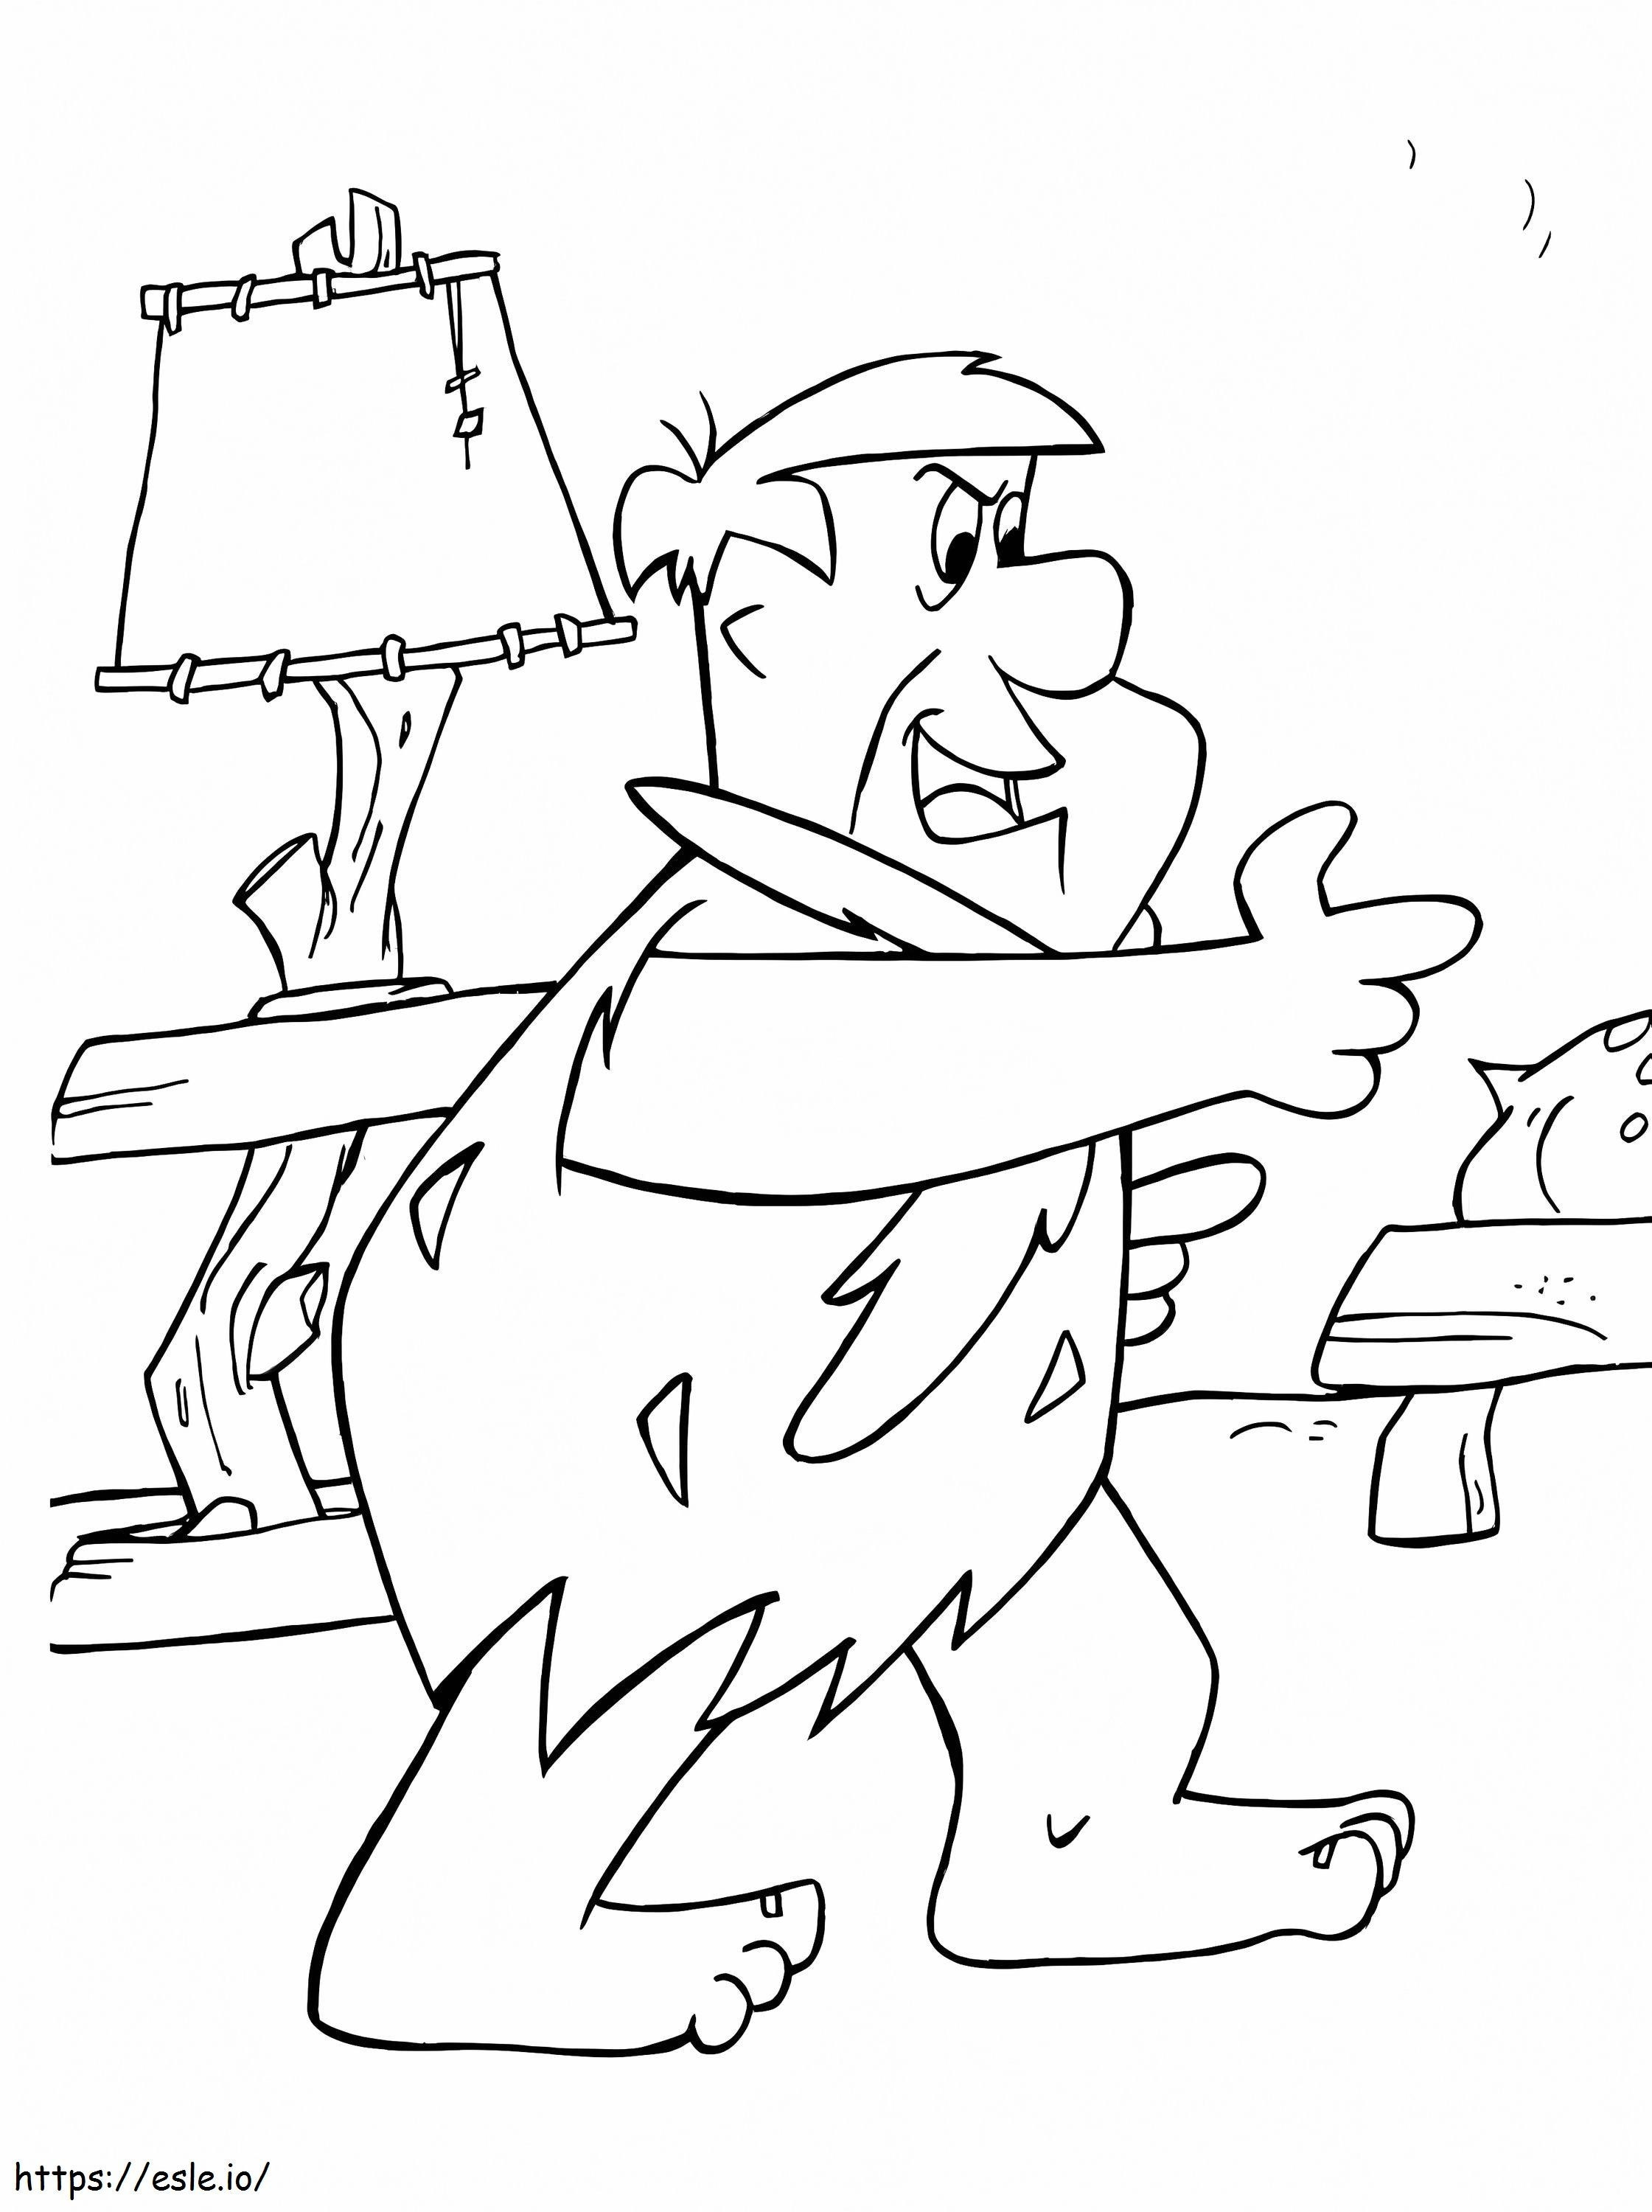 Coloriage Fred Flintstone drôle à imprimer dessin